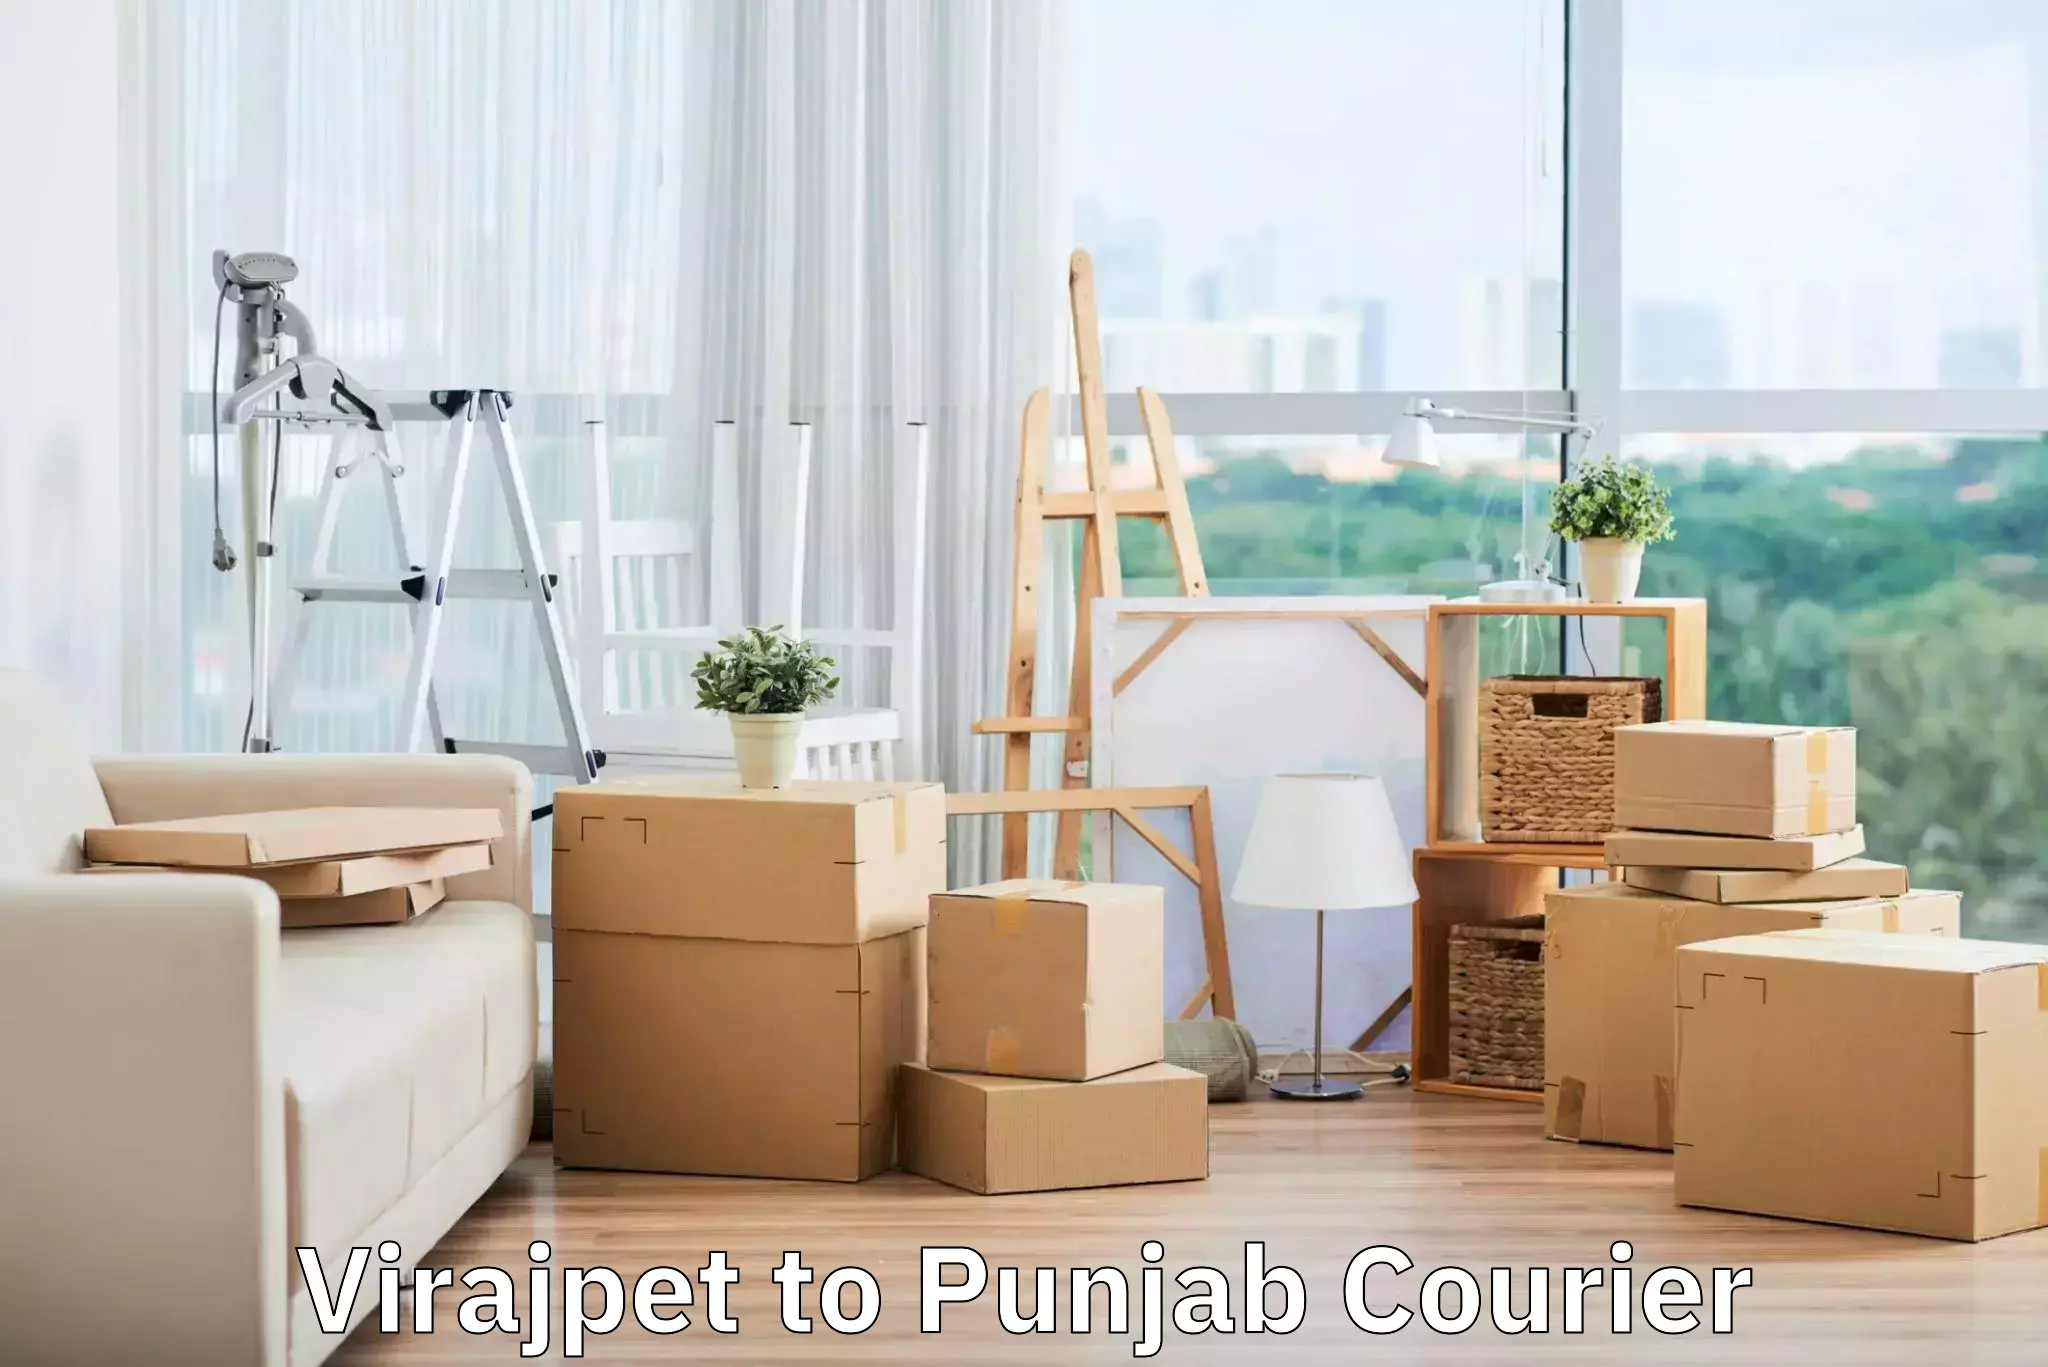 Simplified luggage transport in Virajpet to Punjab